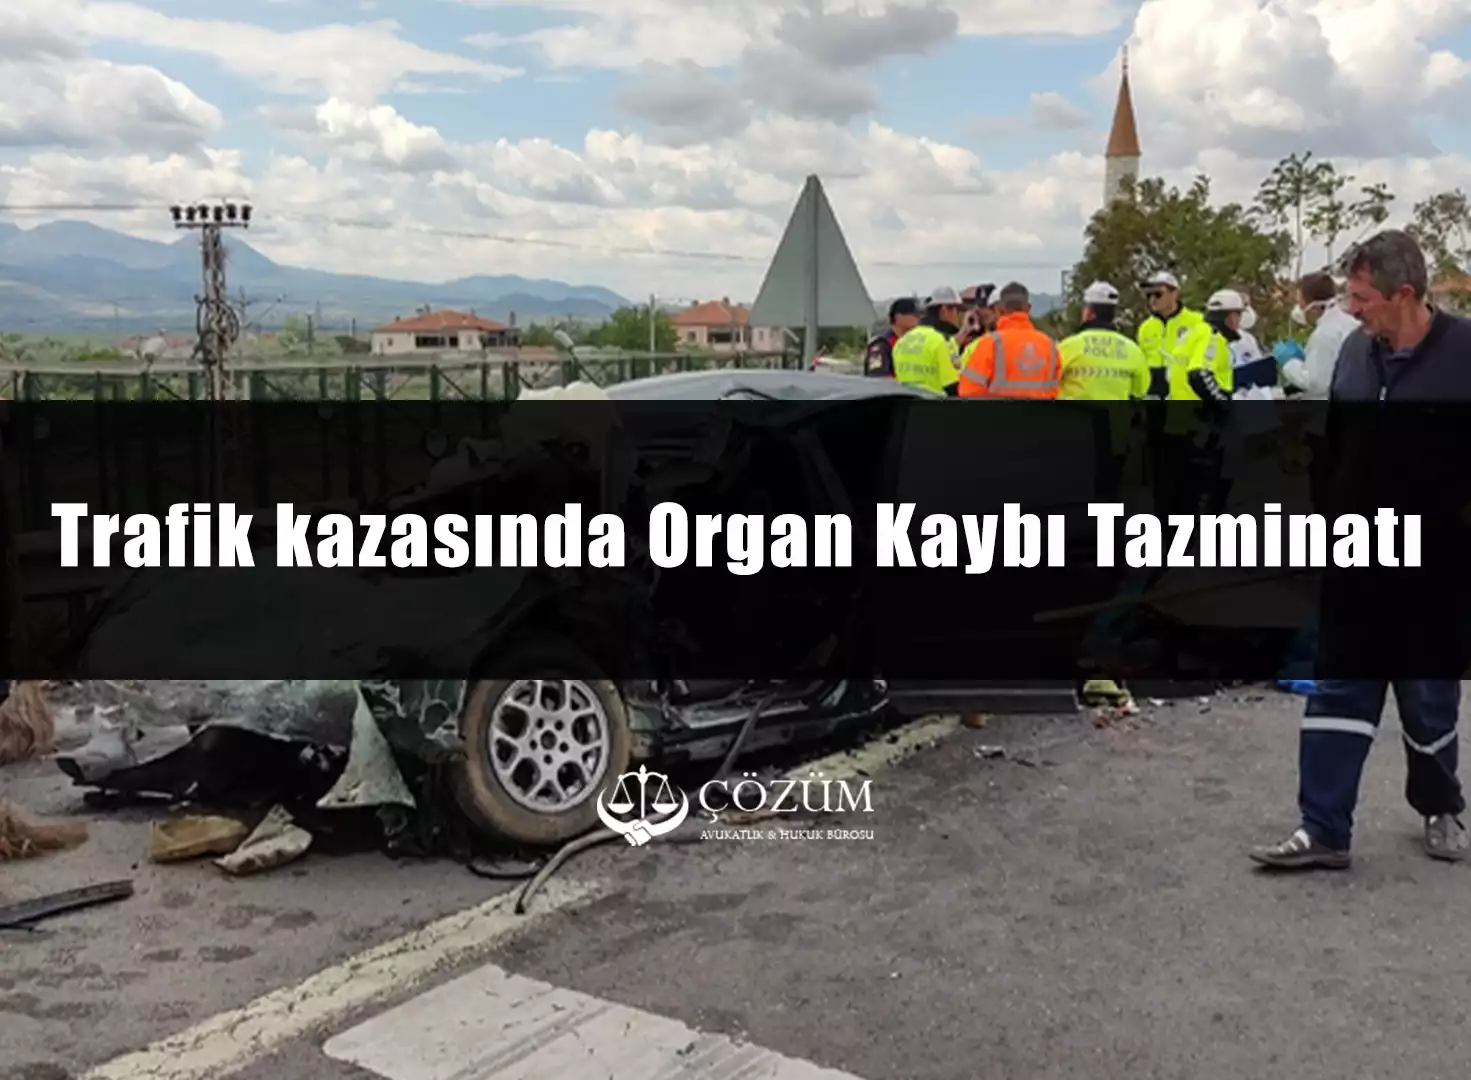 Trafik kazasında Organ Kaybı Tazminatı